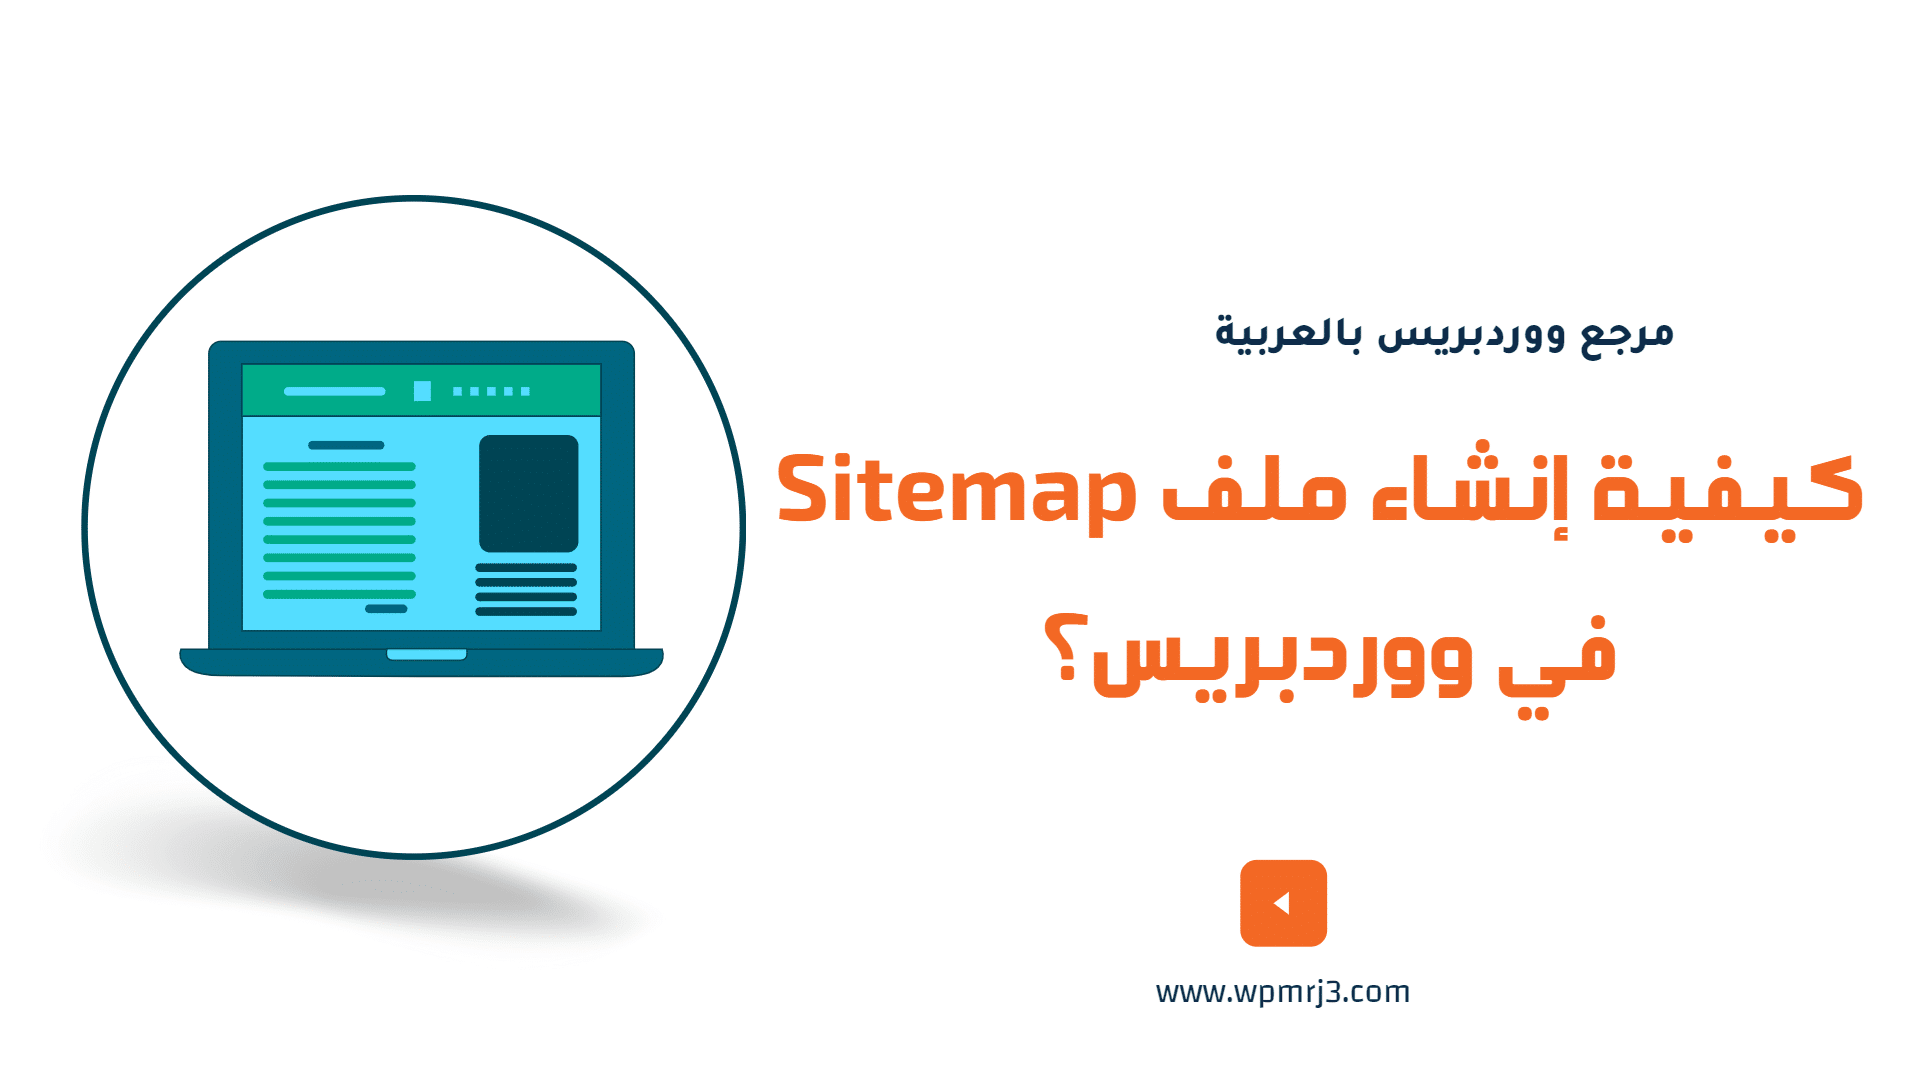 ما هو ملف Sitemap؟ كيفية إنشاء ملف Sitemap في ووردبريس؟